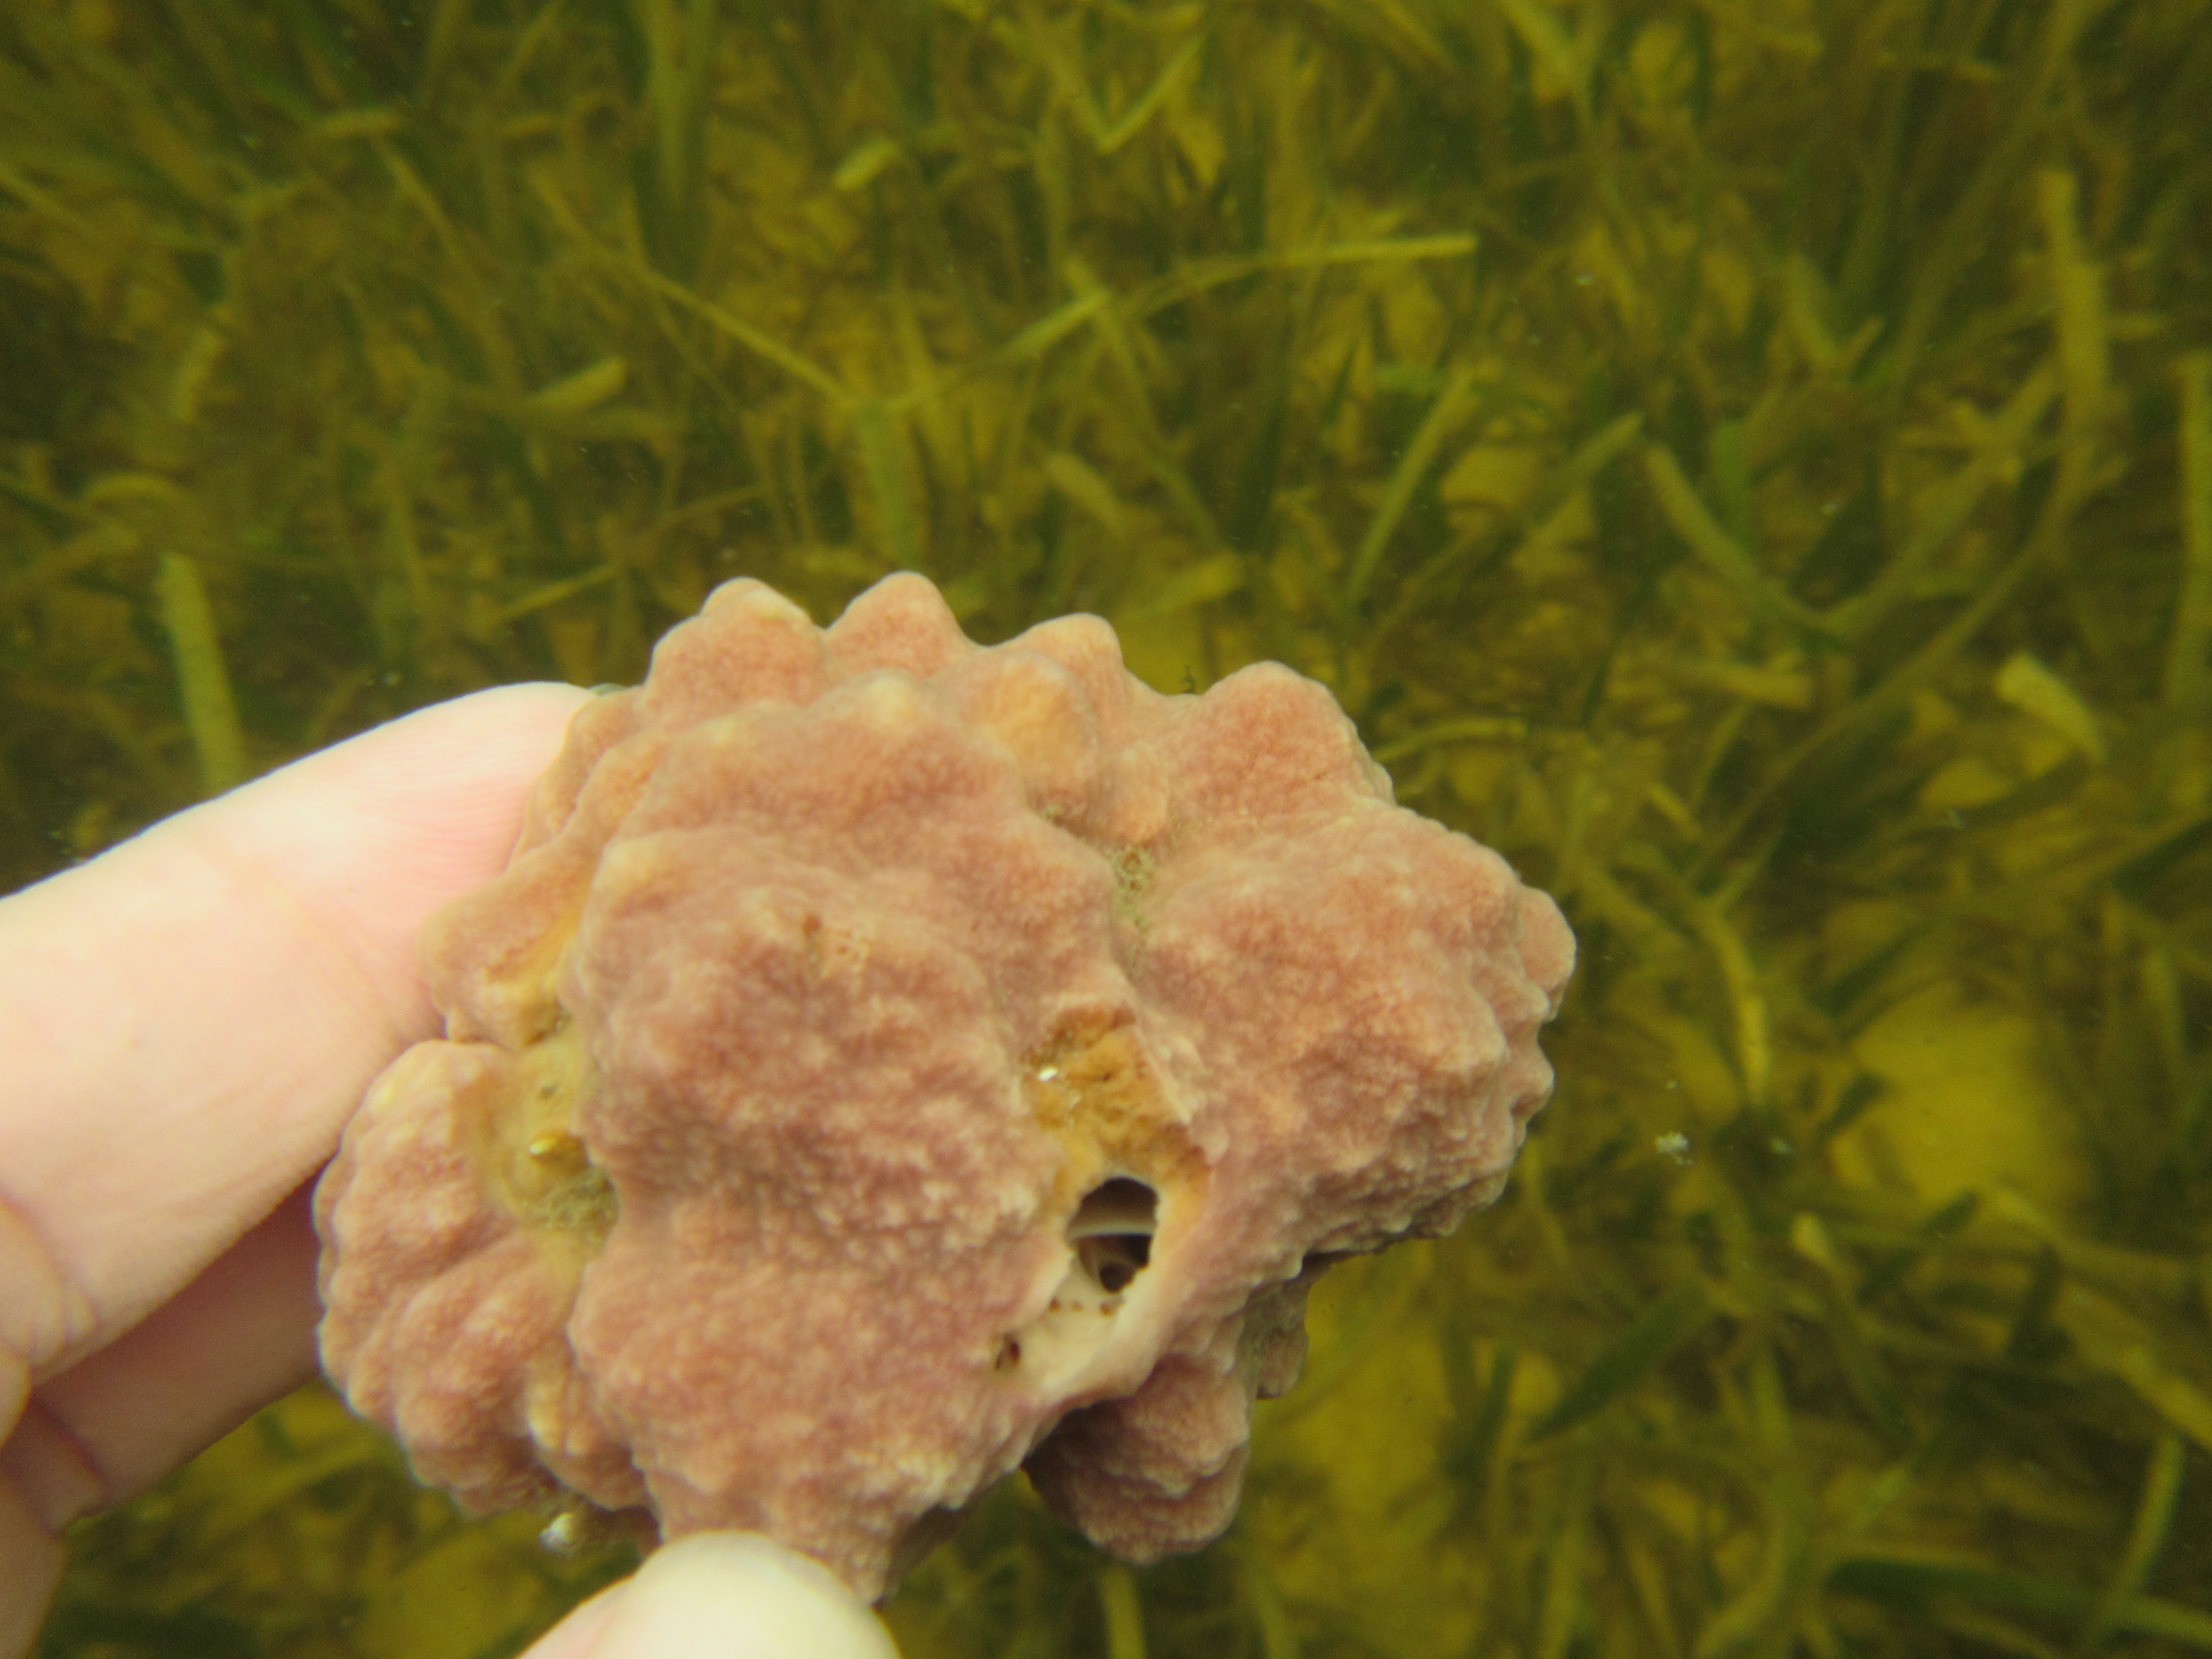 Hermit Crab Sponge